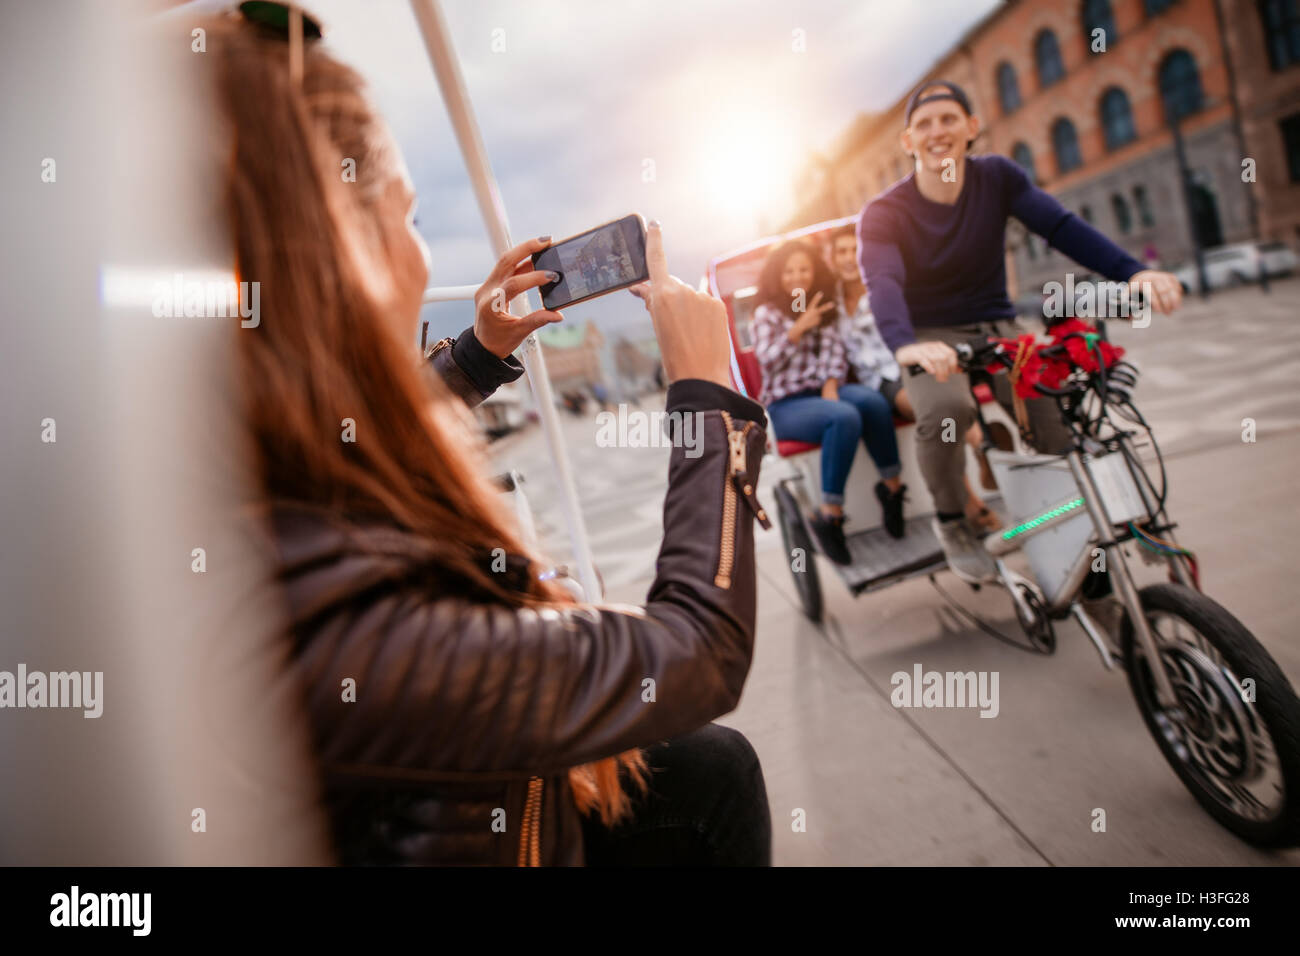 Les femmes prenant des photos d'amis sur le trajet en tricycle. Bénéficiant d'Amis de vacances. Banque D'Images